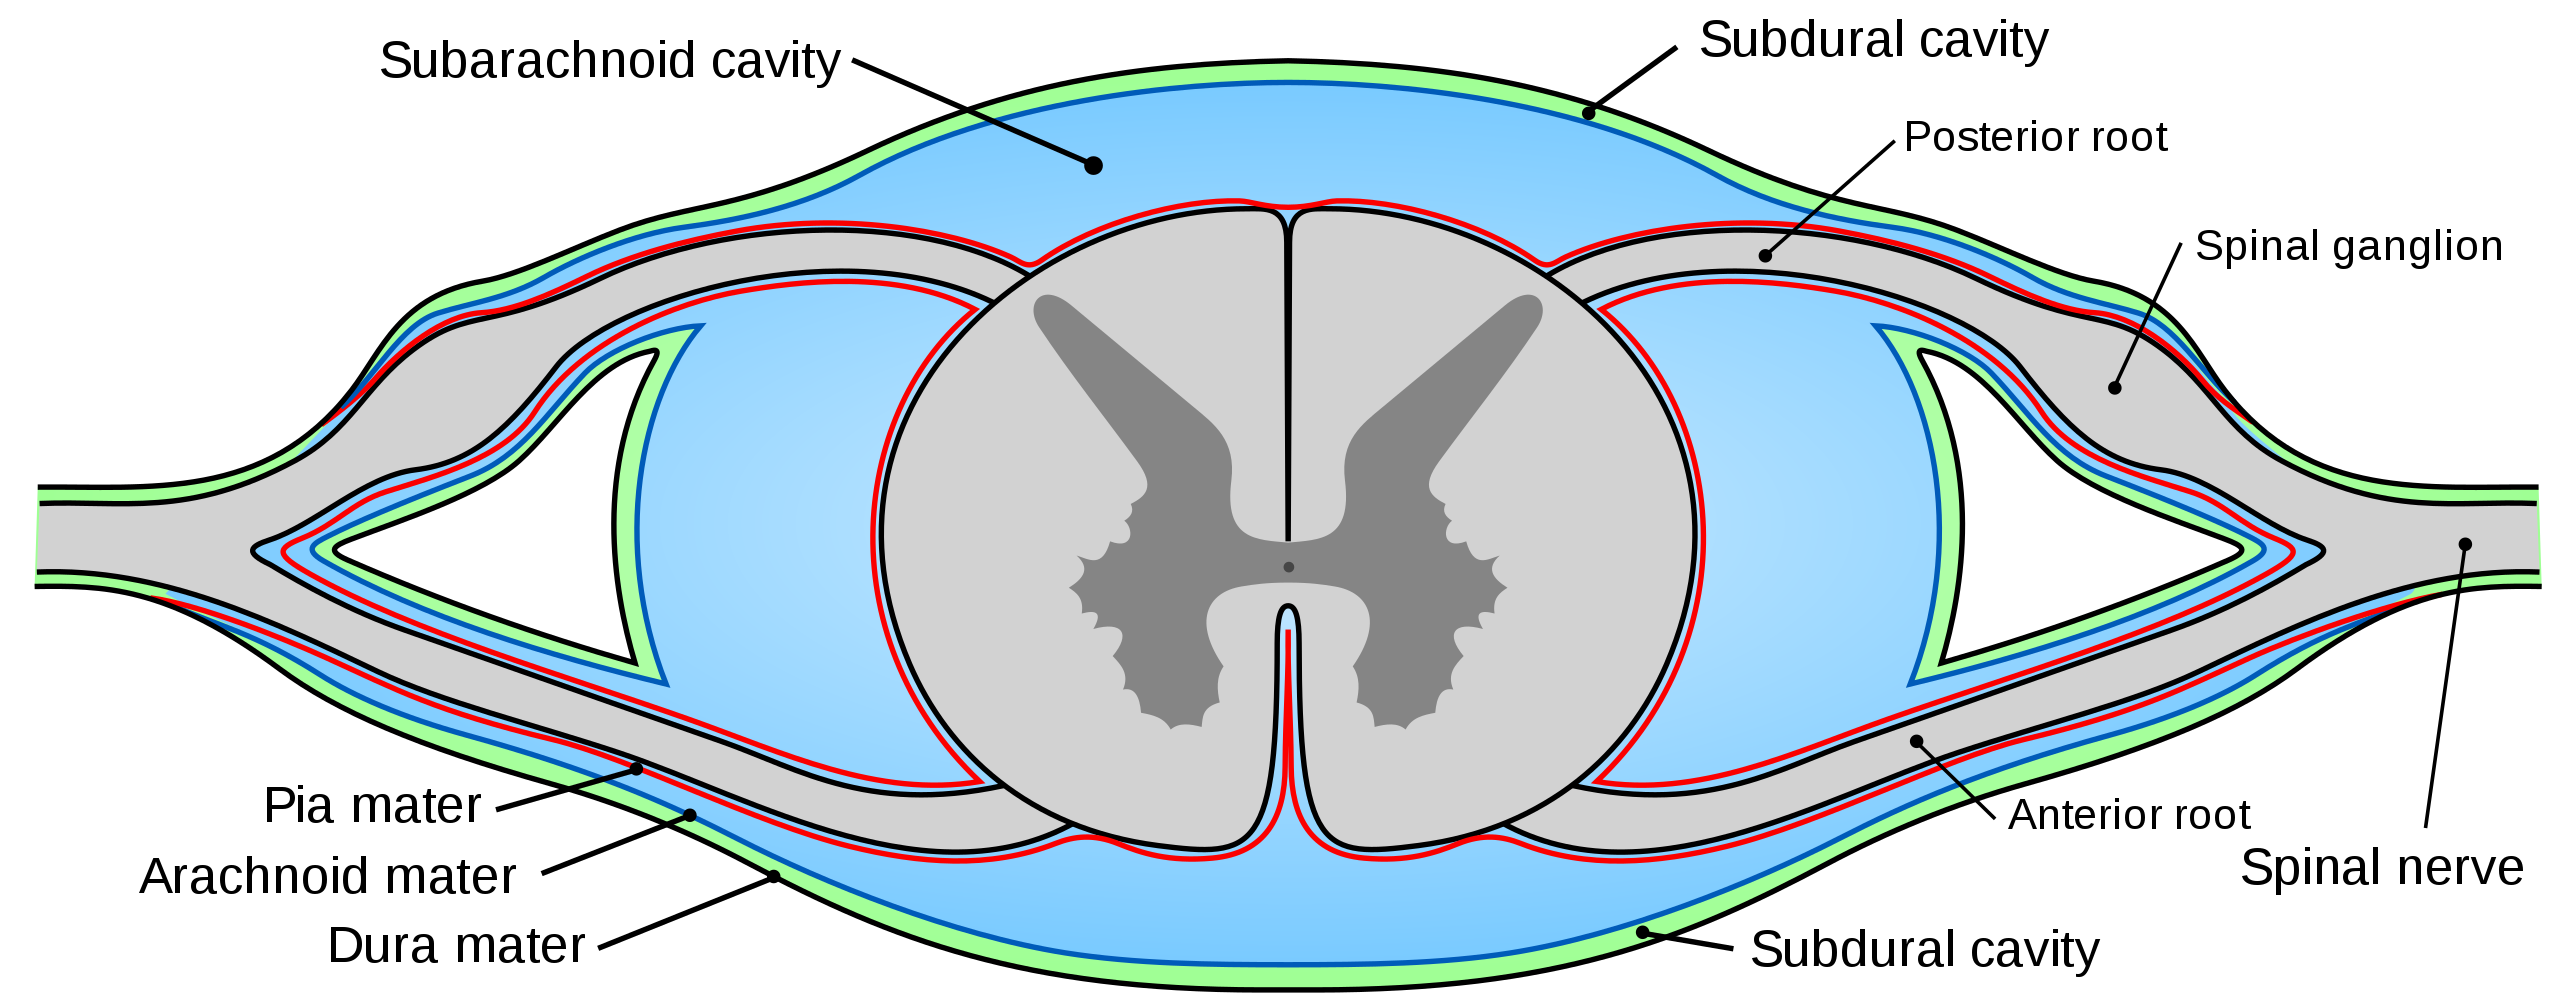 Dibujo de un segmento de la médula espinal con meninges y otras estructuras etiquetadas; todas las estructuras están listadas en el texto